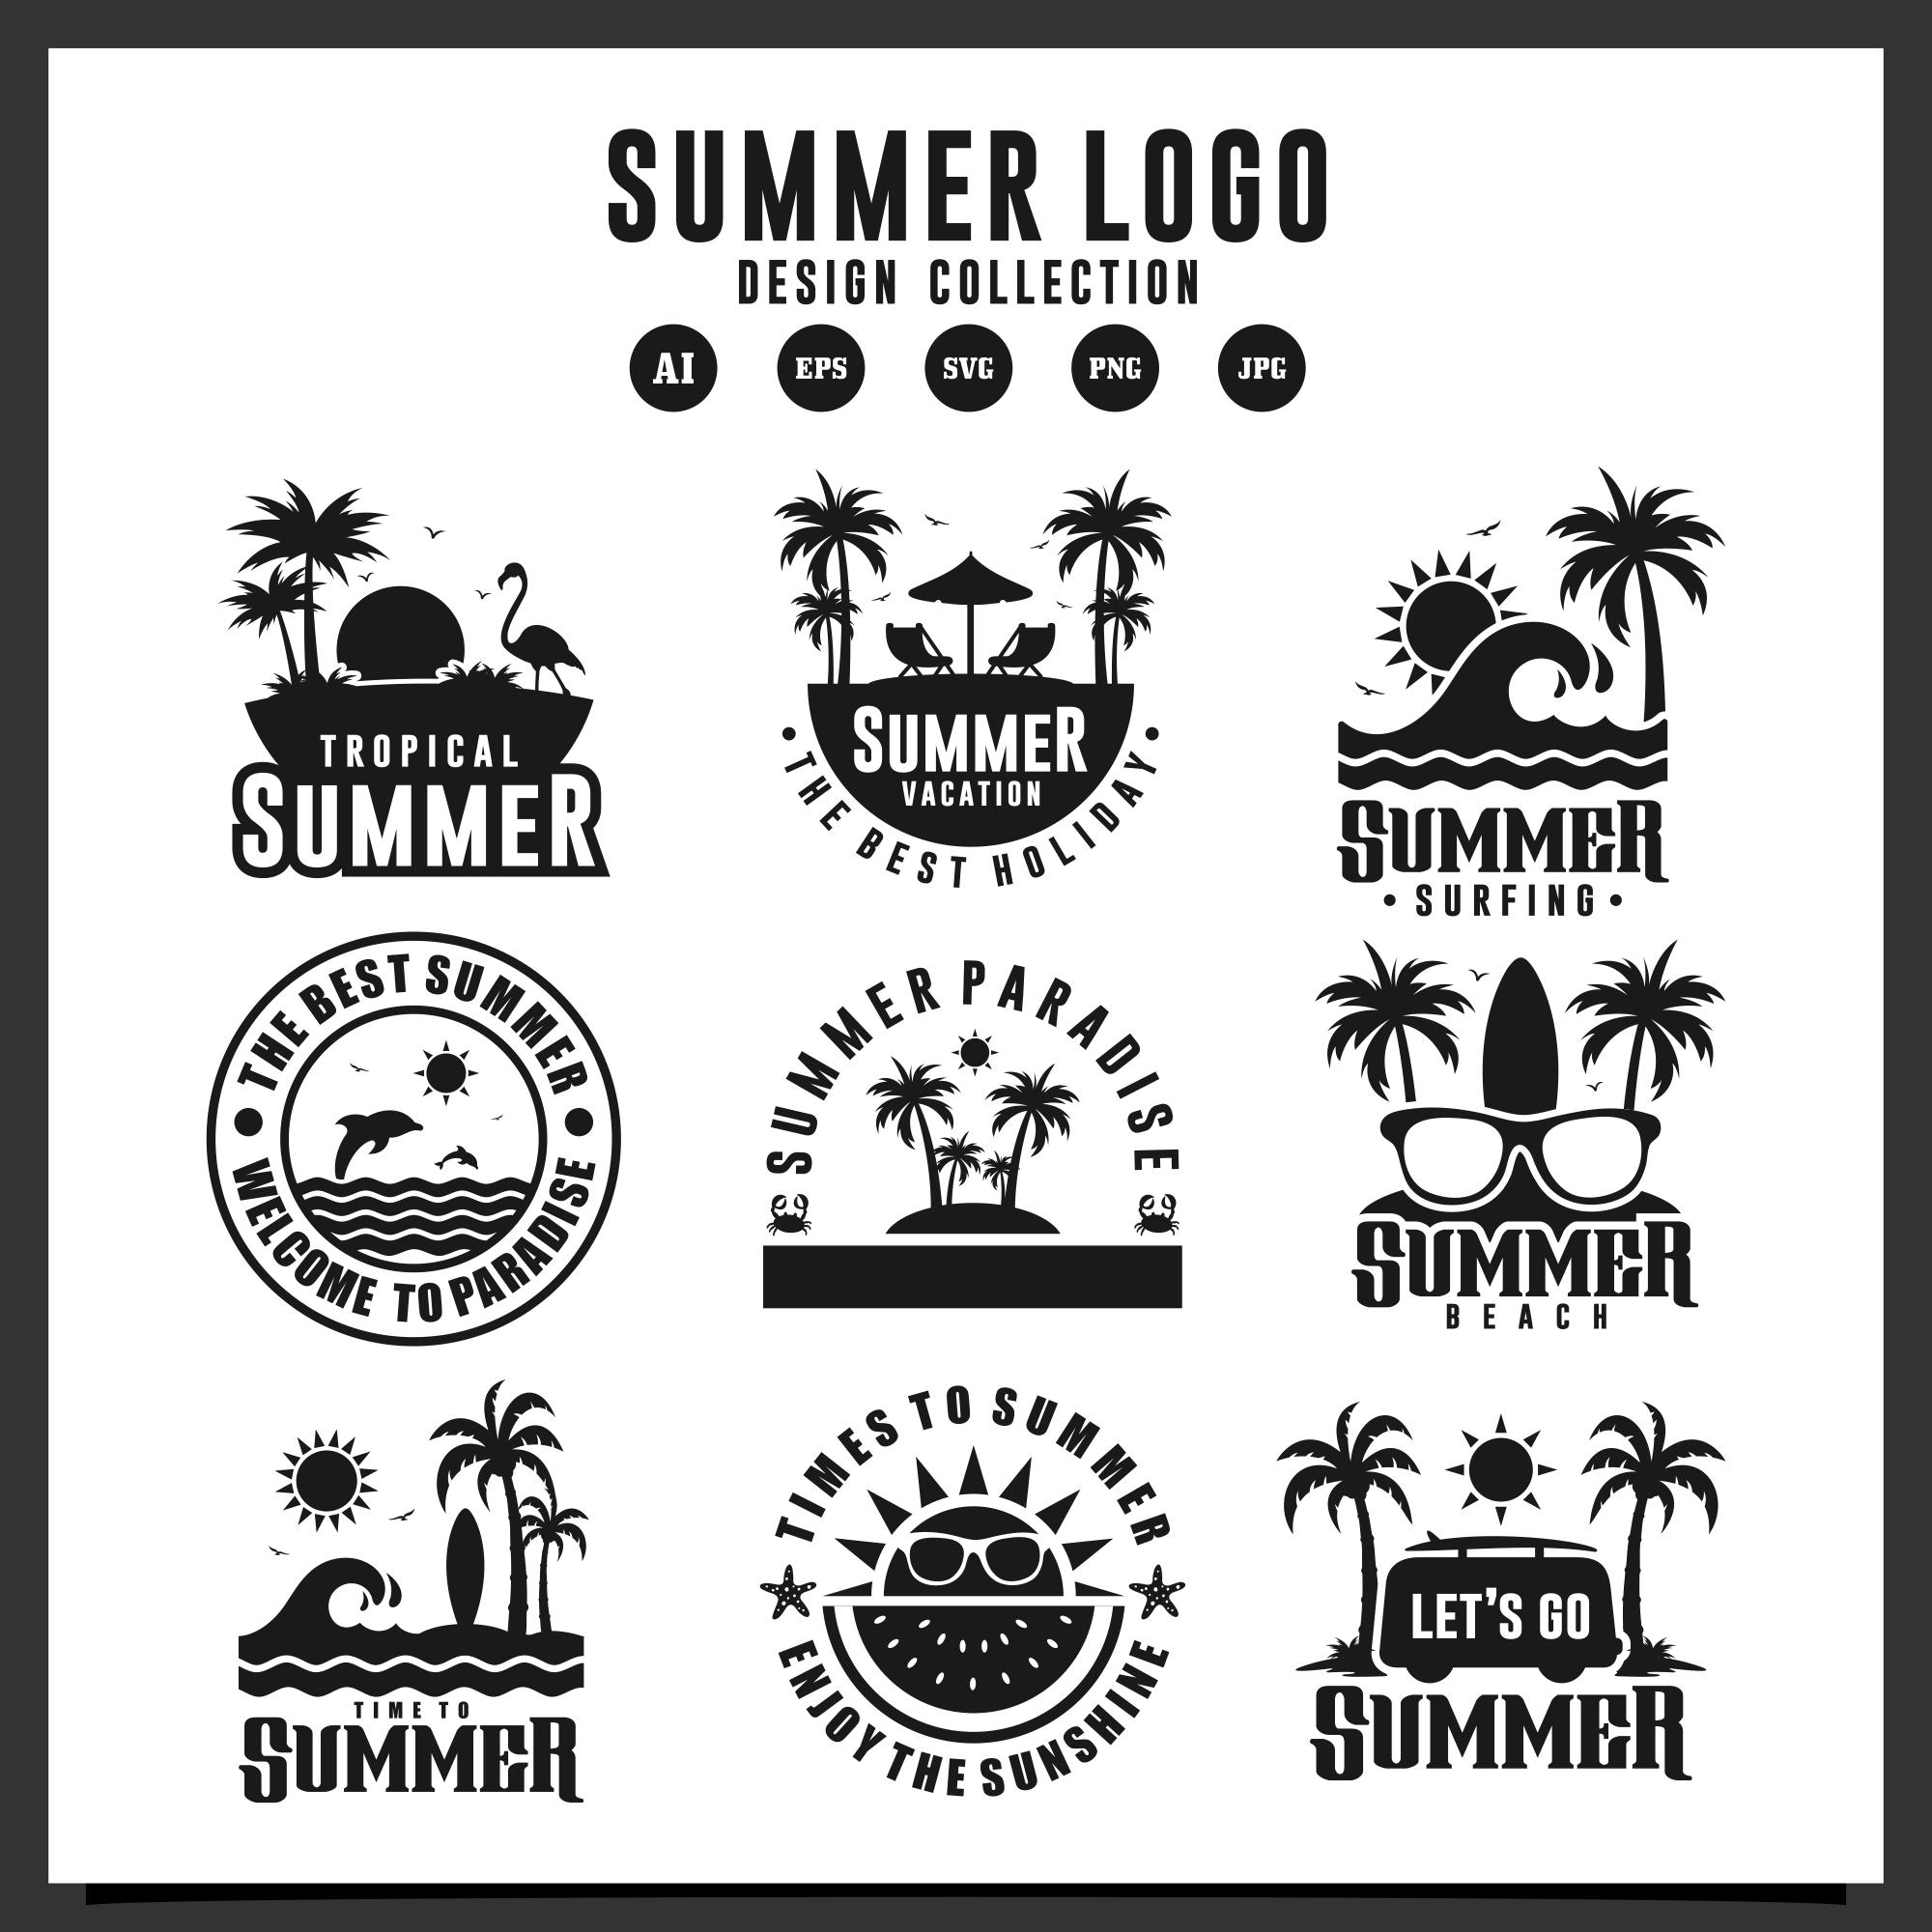 9 summer logo design collection 517